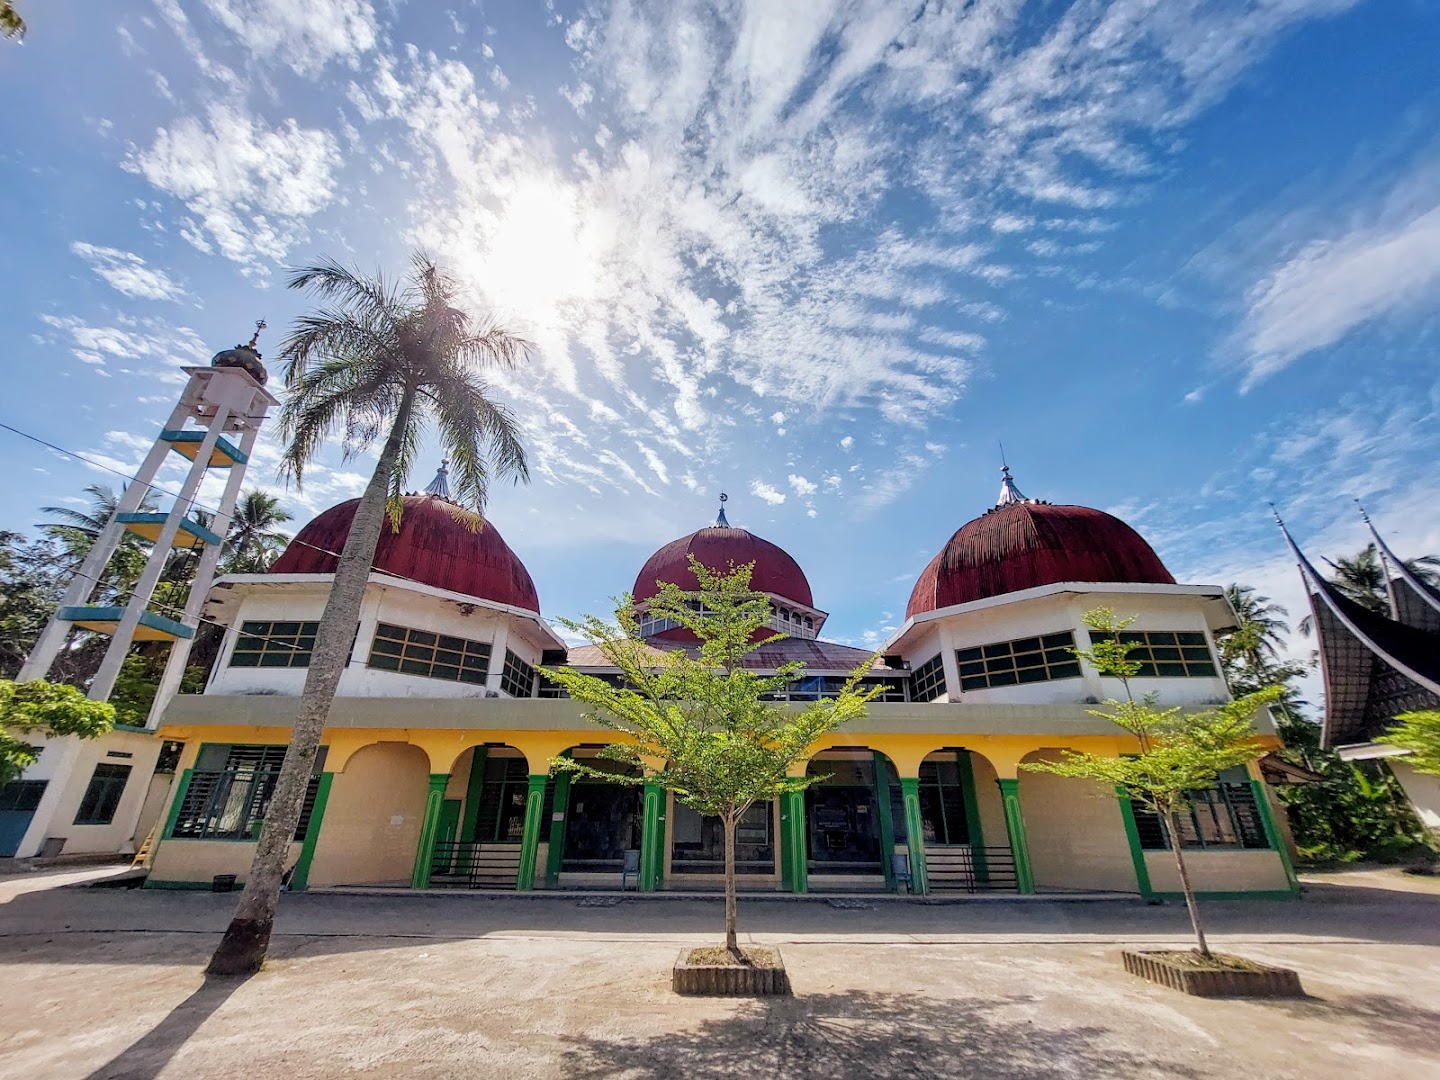 Masjid Raya Koto Tangah Padang Photo